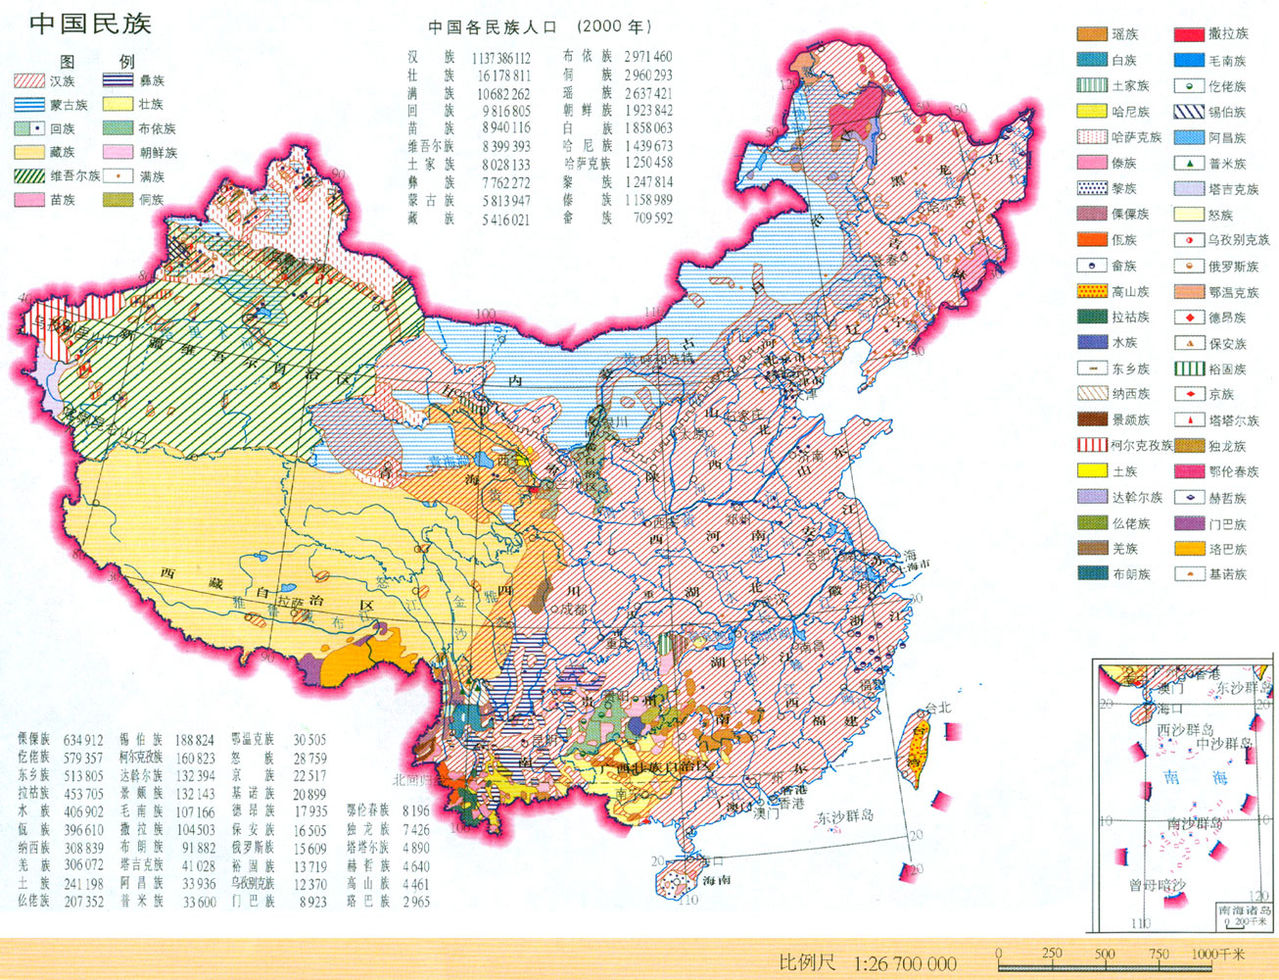 中國各民族分布